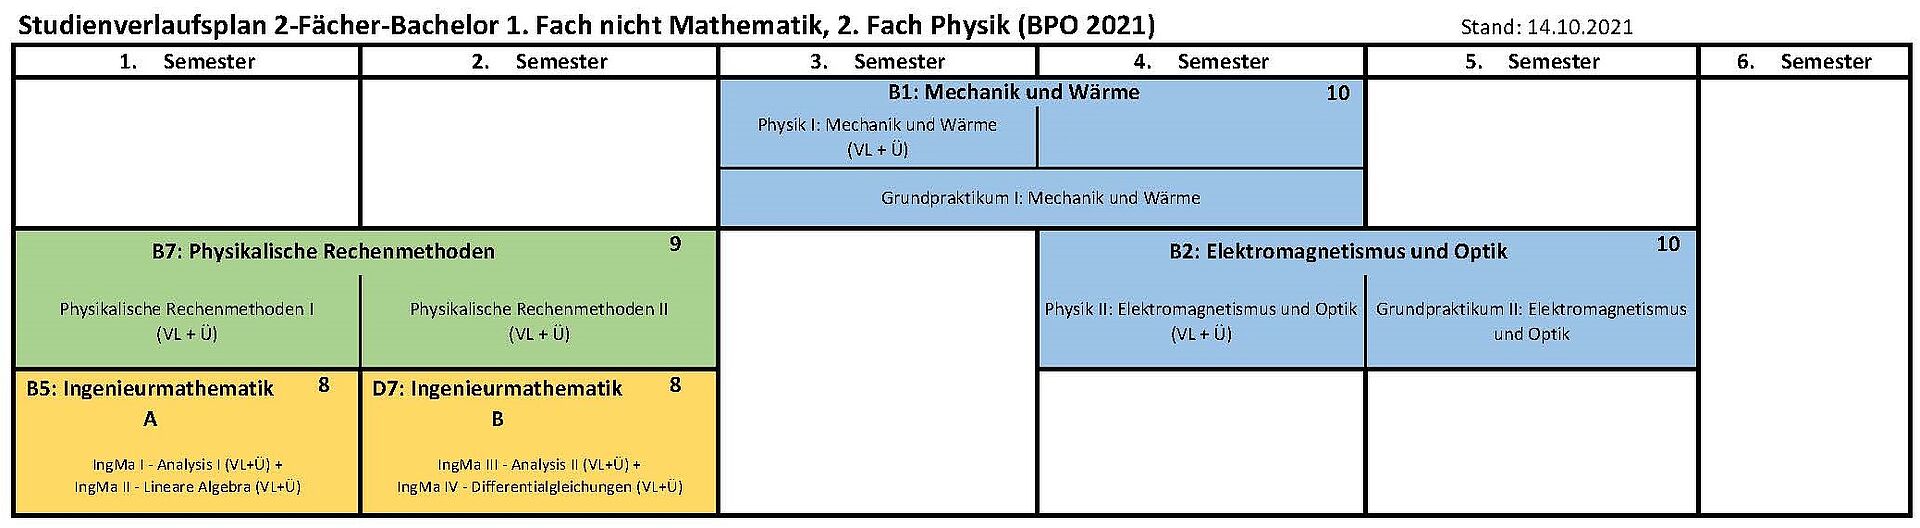 Musterstudienverlaufsplan 2-Fächer Bachelor 1. Fach nicht Mathe, 2. Fach Physik (BPO 2021)